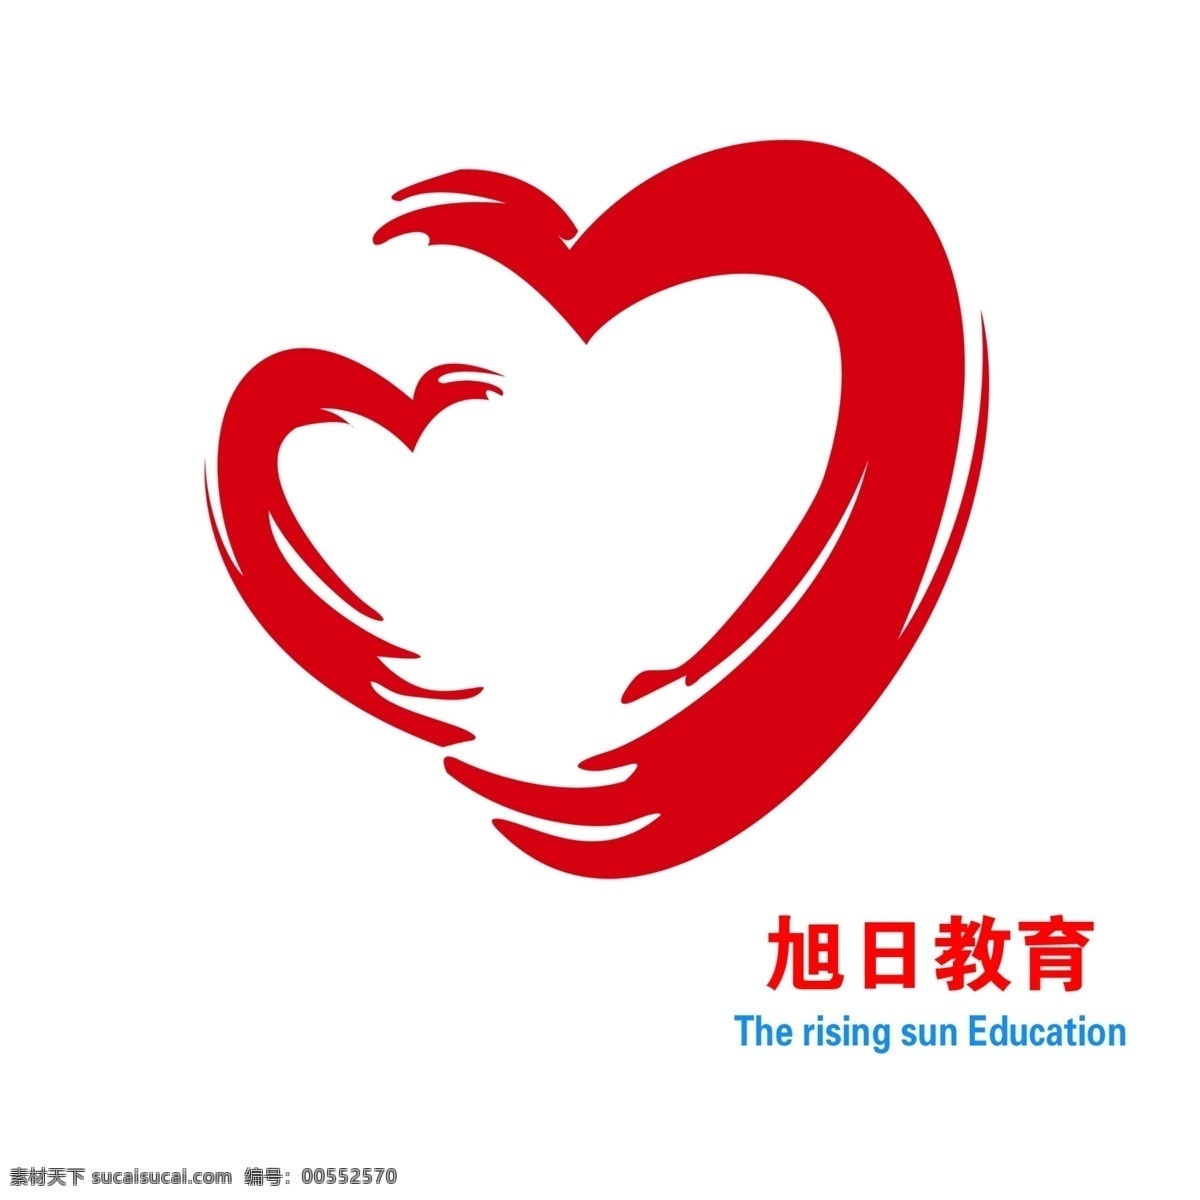 旭升教育标 教育标志 心型标志 红色标志 旭升教育 logo设计